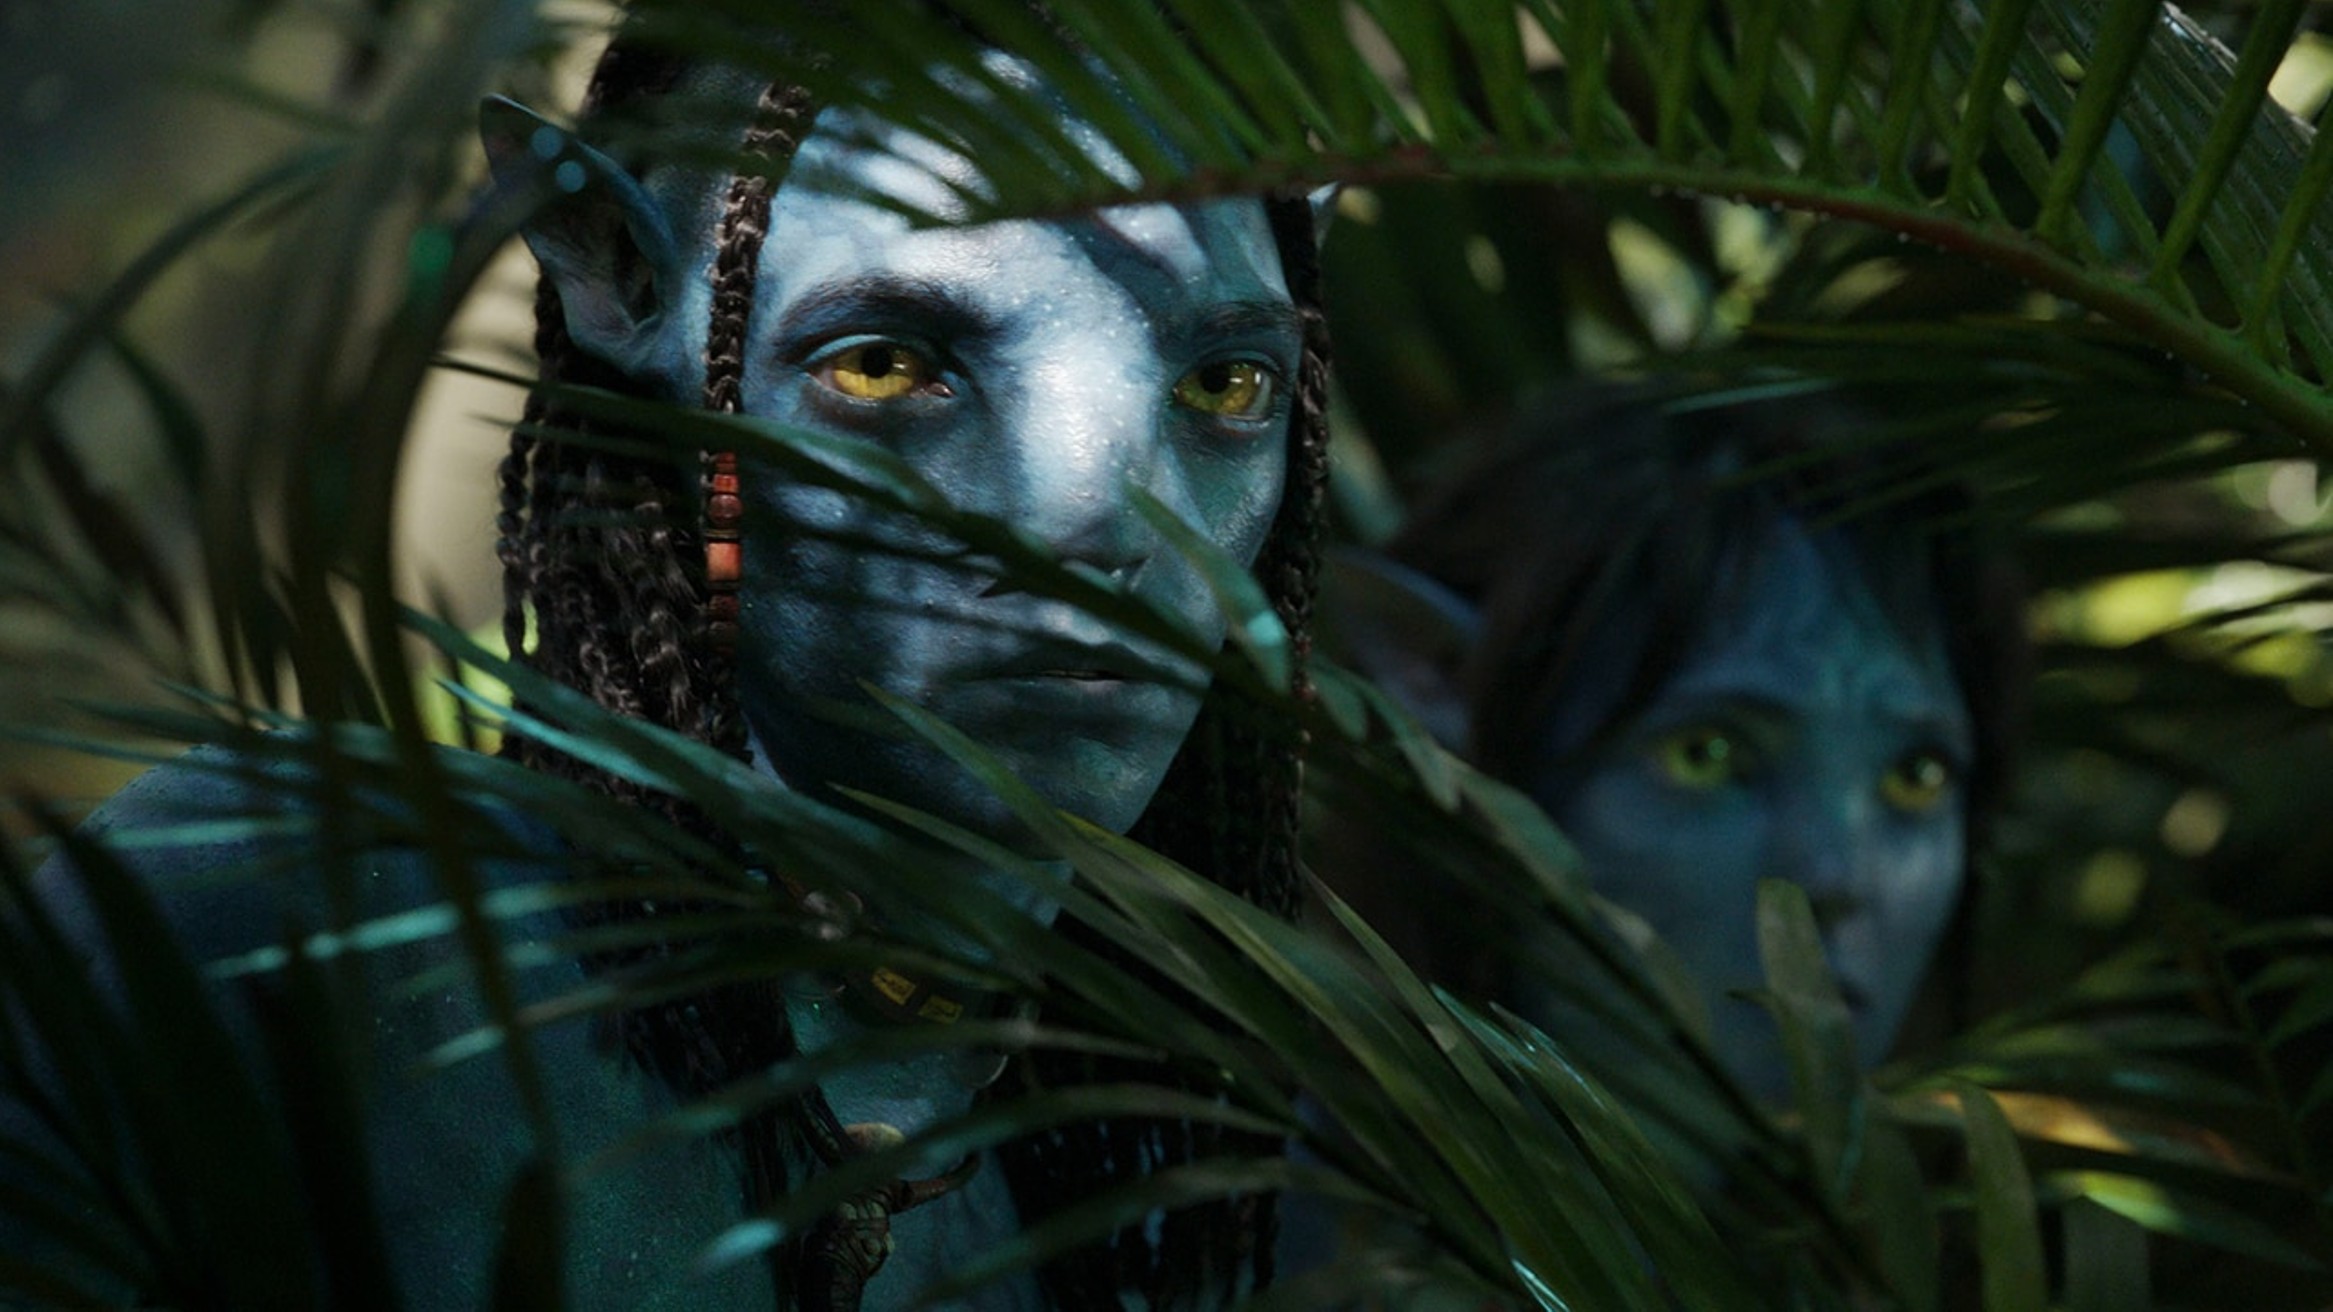 Cốt truyện Avatar:
Vào năm 2024, cốt truyện Avatar đã được tạo ra một cách rất đáng kinh ngạc và sáng tạo. Những thông tin về cuộc chiến tranh giữa nhân loại và bộ tộc Na\'vi đầy hấp dẫn và tràn đầy cảm xúc sẽ khiến cho không ít người phải cảm thấy thích thú. Hãy cùng theo dõi và khám phá bí mật ẩn giấu trong thế giới Pandora của Avatar.